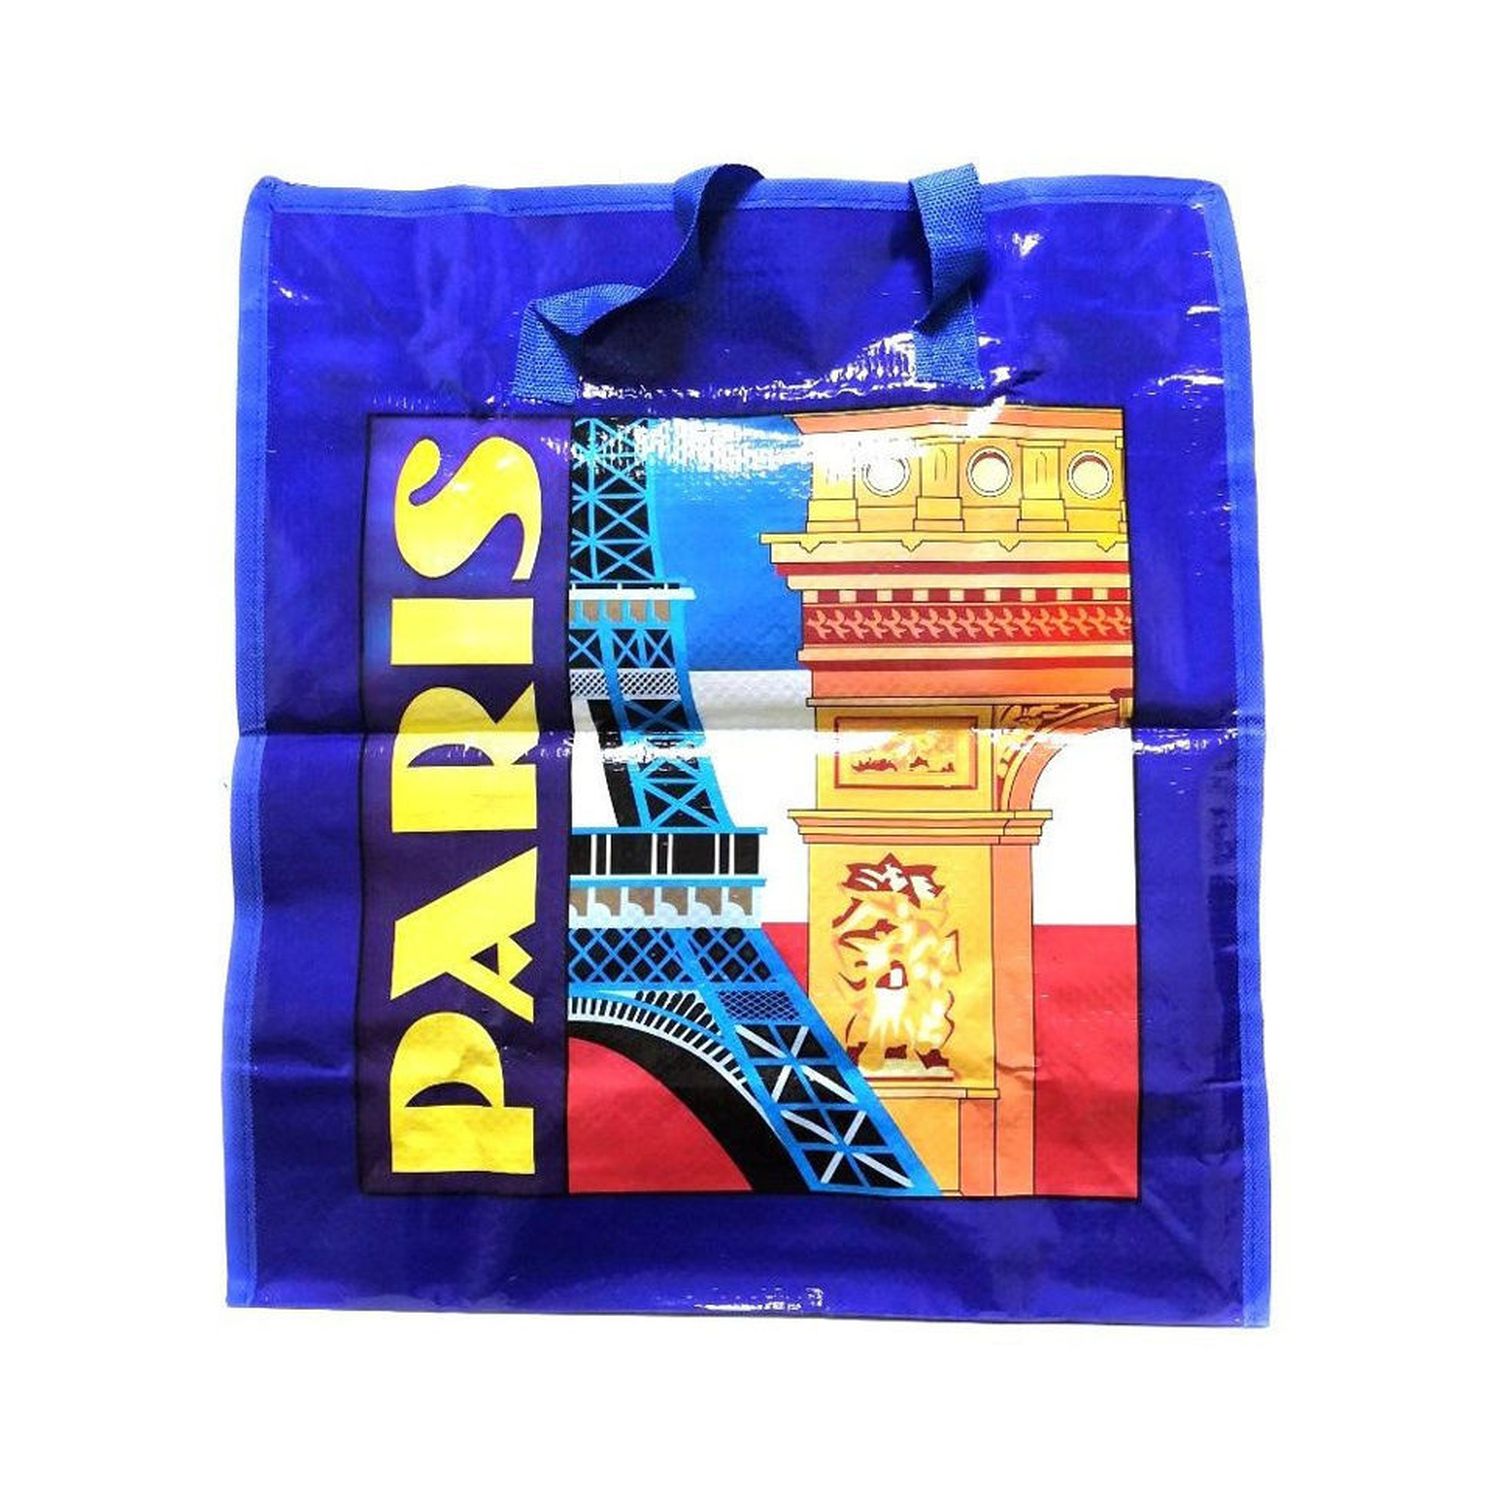 Хозяйственная сумка Uniglodis с рисунком Париж - фото 1